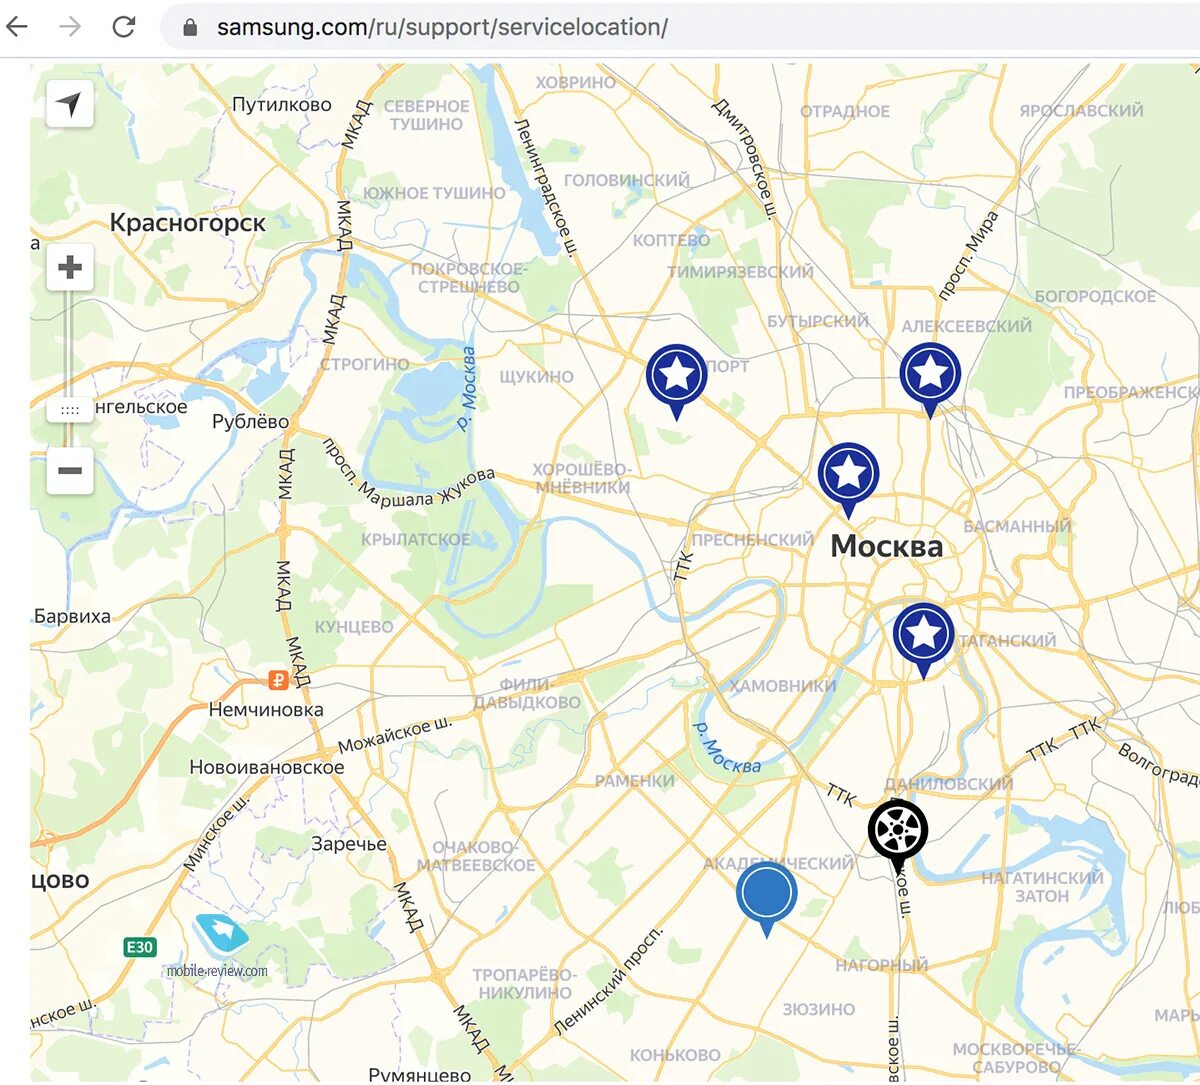 Все инструменты магазины на карте. Карта Москвы с магазинами. Сервисный центр Samsung в Москве адреса. Сервисные центры на карте. Карта магазина.